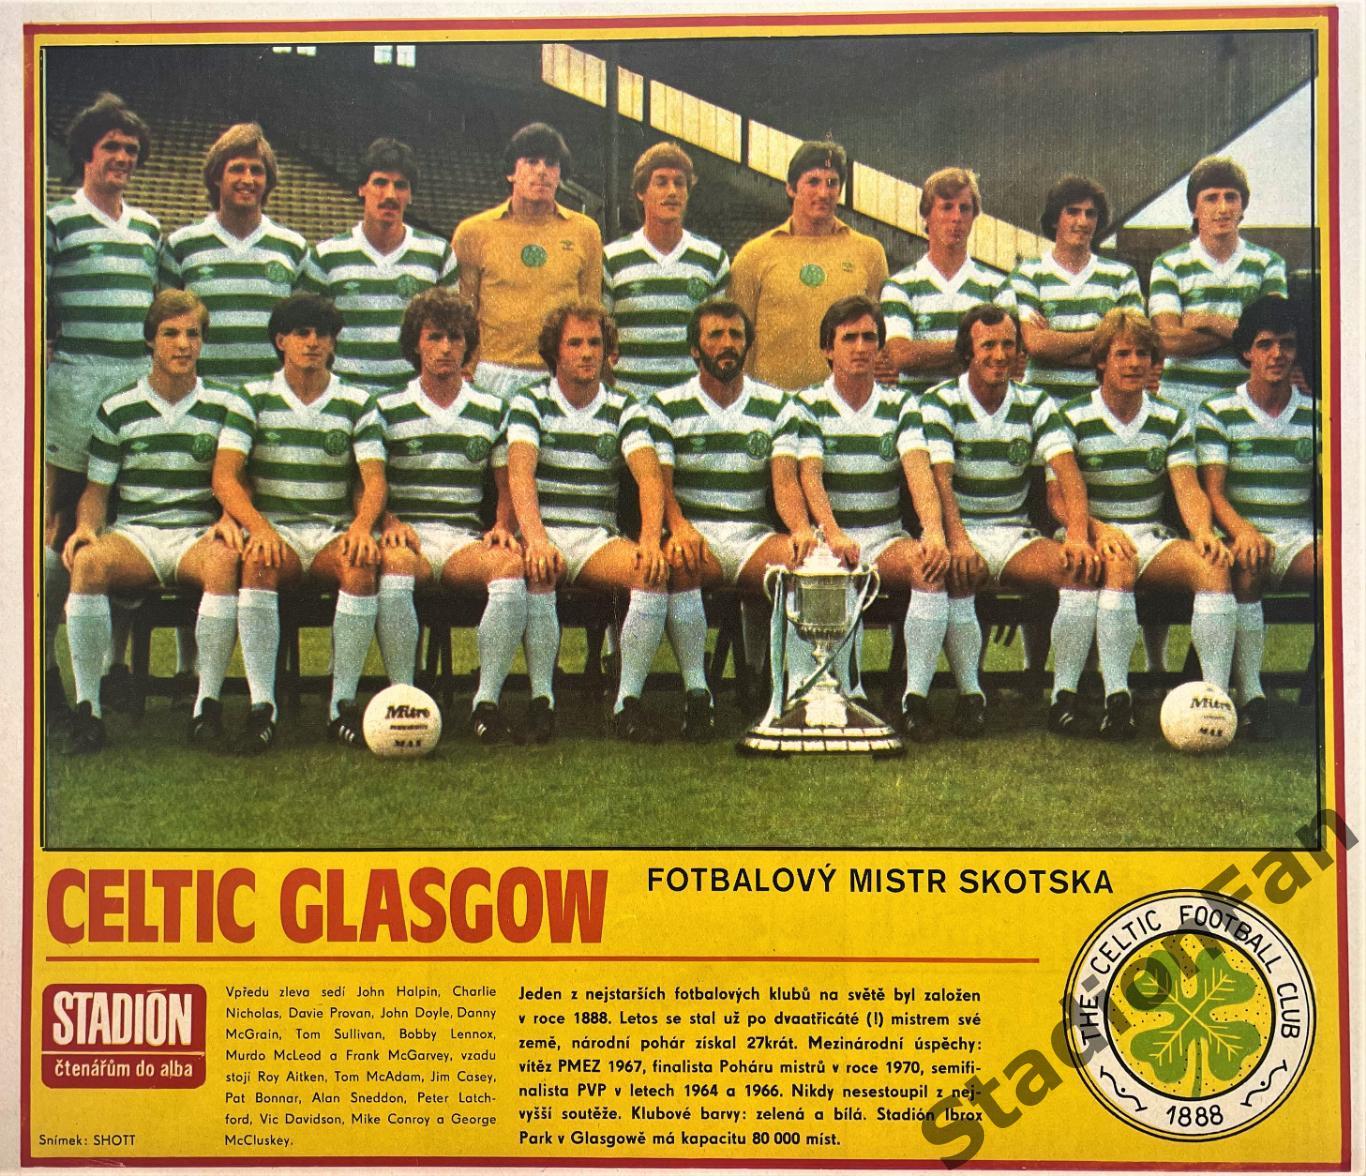 Постер из журнала Стадион (Stadion) - Celtic Glasgow, 1981.